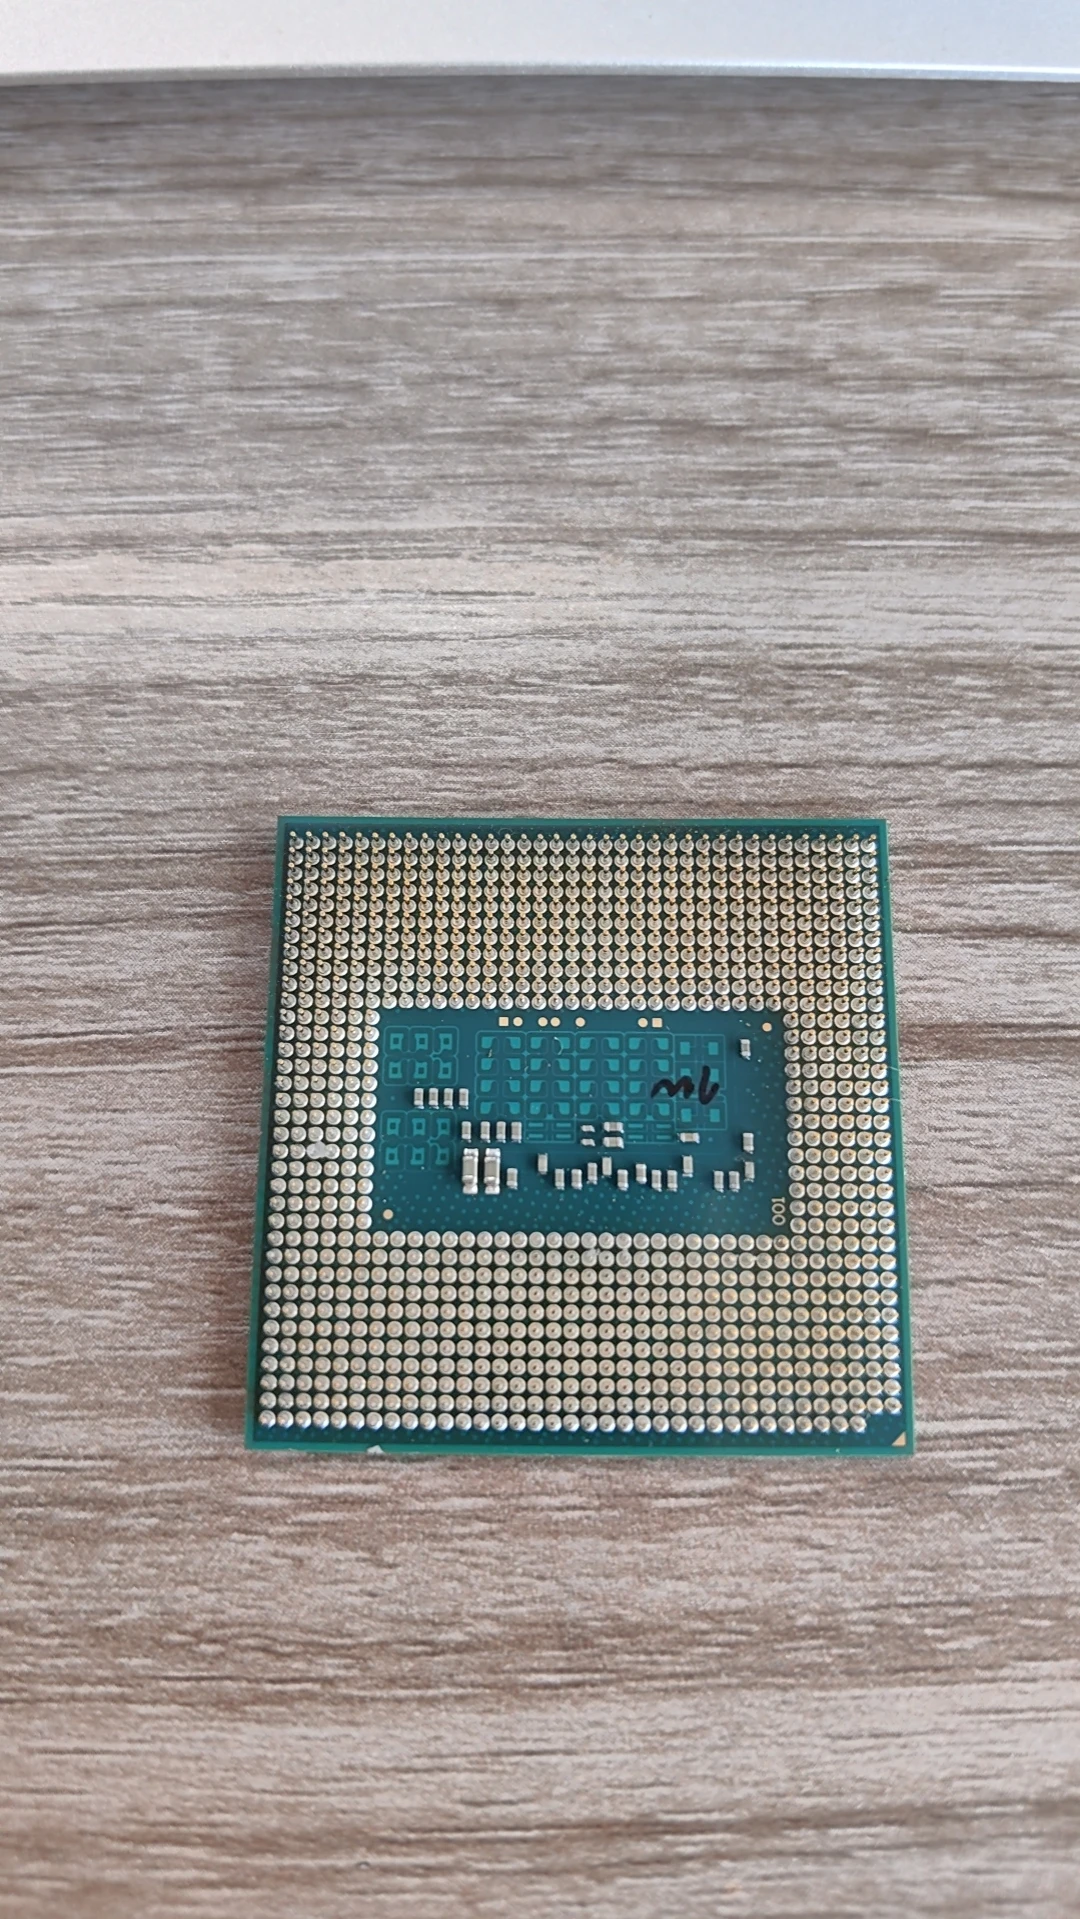 Dizüstü bilgisayar CPU I7-4800MQ 2.7-3.7 G 8M SR15L dört çekirdekli 8 iş parçacıklı CPU, bilgi işlem gücü verileri için . ' - ' . 1